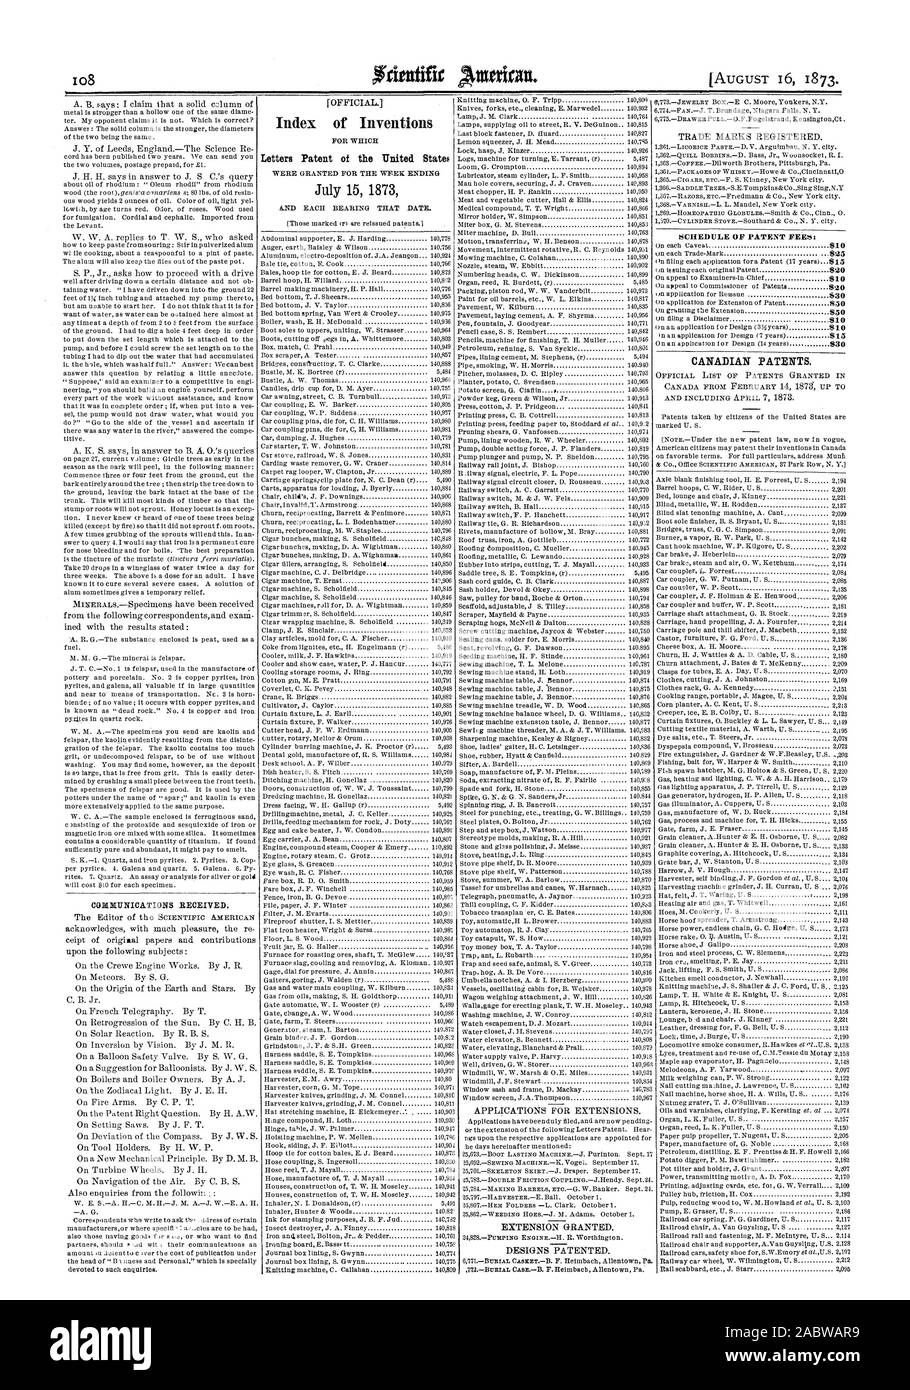 CORMITNICATIONS recibido. Índice cartas patentes de invenciones de los Estados Unidos de América el 15 de julio de 1873, el calendario de las tasas de patentes: las patentes canadienses., Scientific American, 1873-08-16 Foto de stock